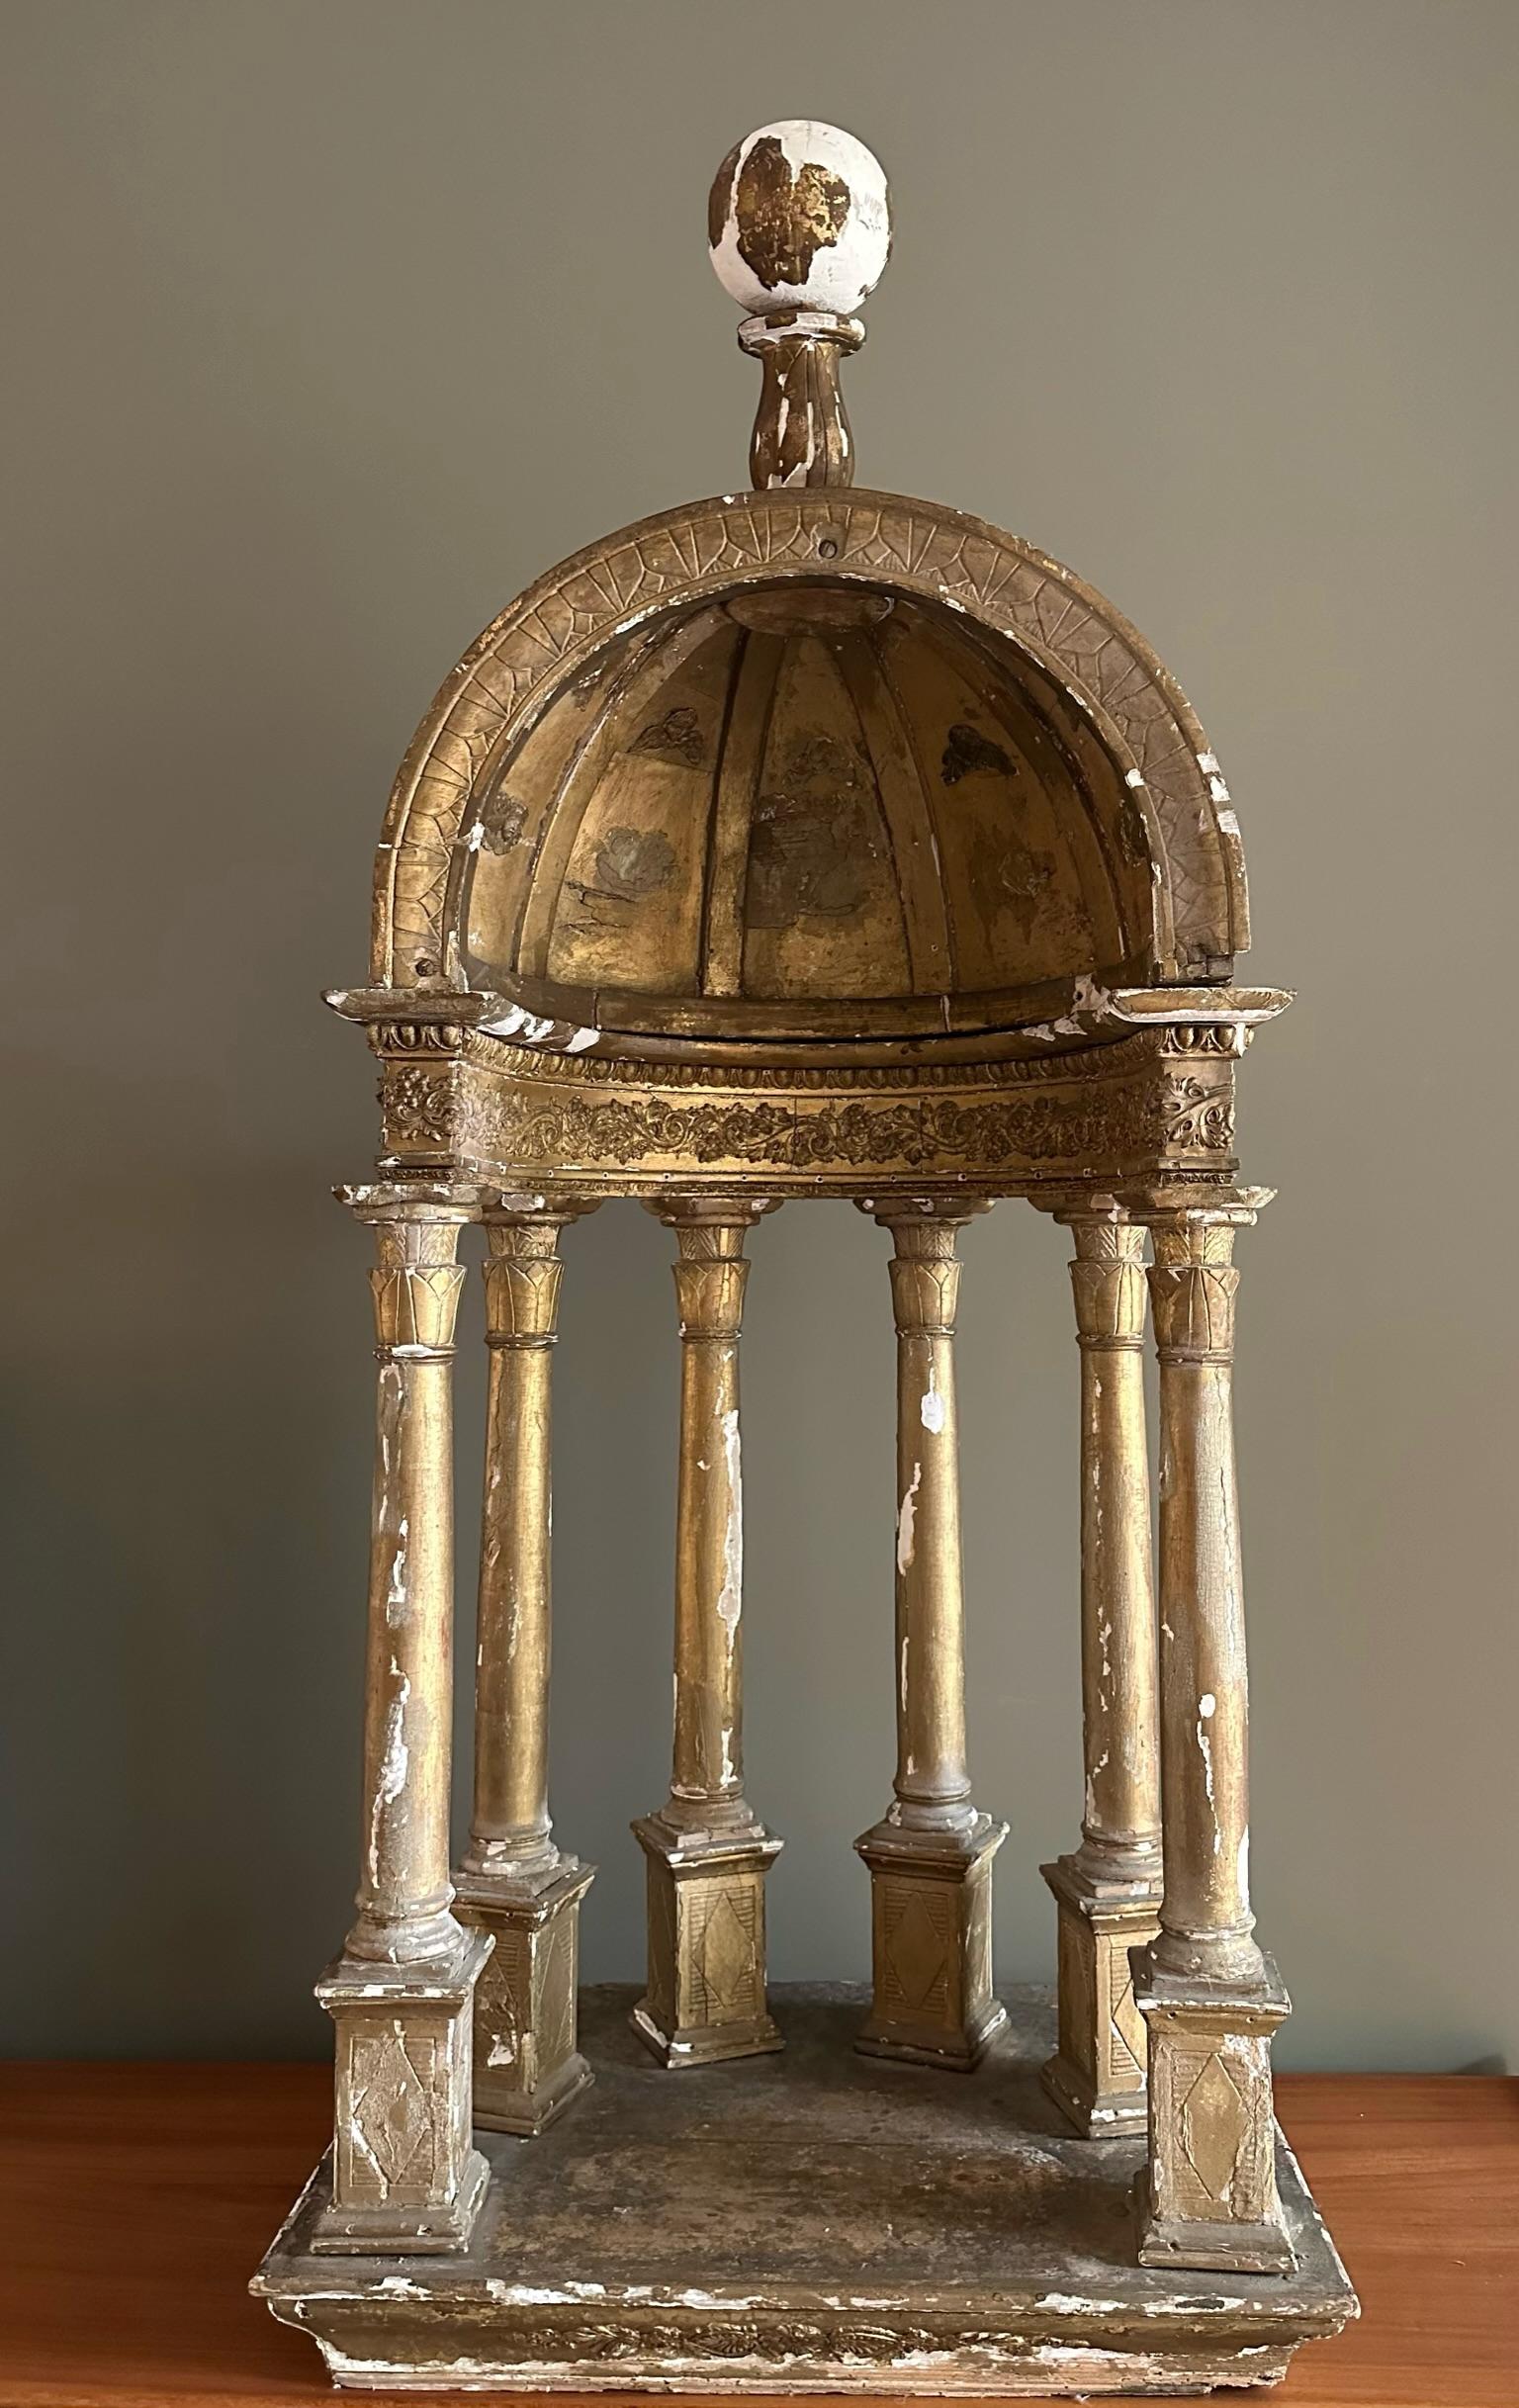 Magnifique tabernacle ou dôme français du XIXe siècle.
Fabriqué en bois et en plâtre. Avec de beaux restes de dorure.

La pièce présente une magnifique patine.

Une pièce impressionnante pour un intérieur éclectique.
